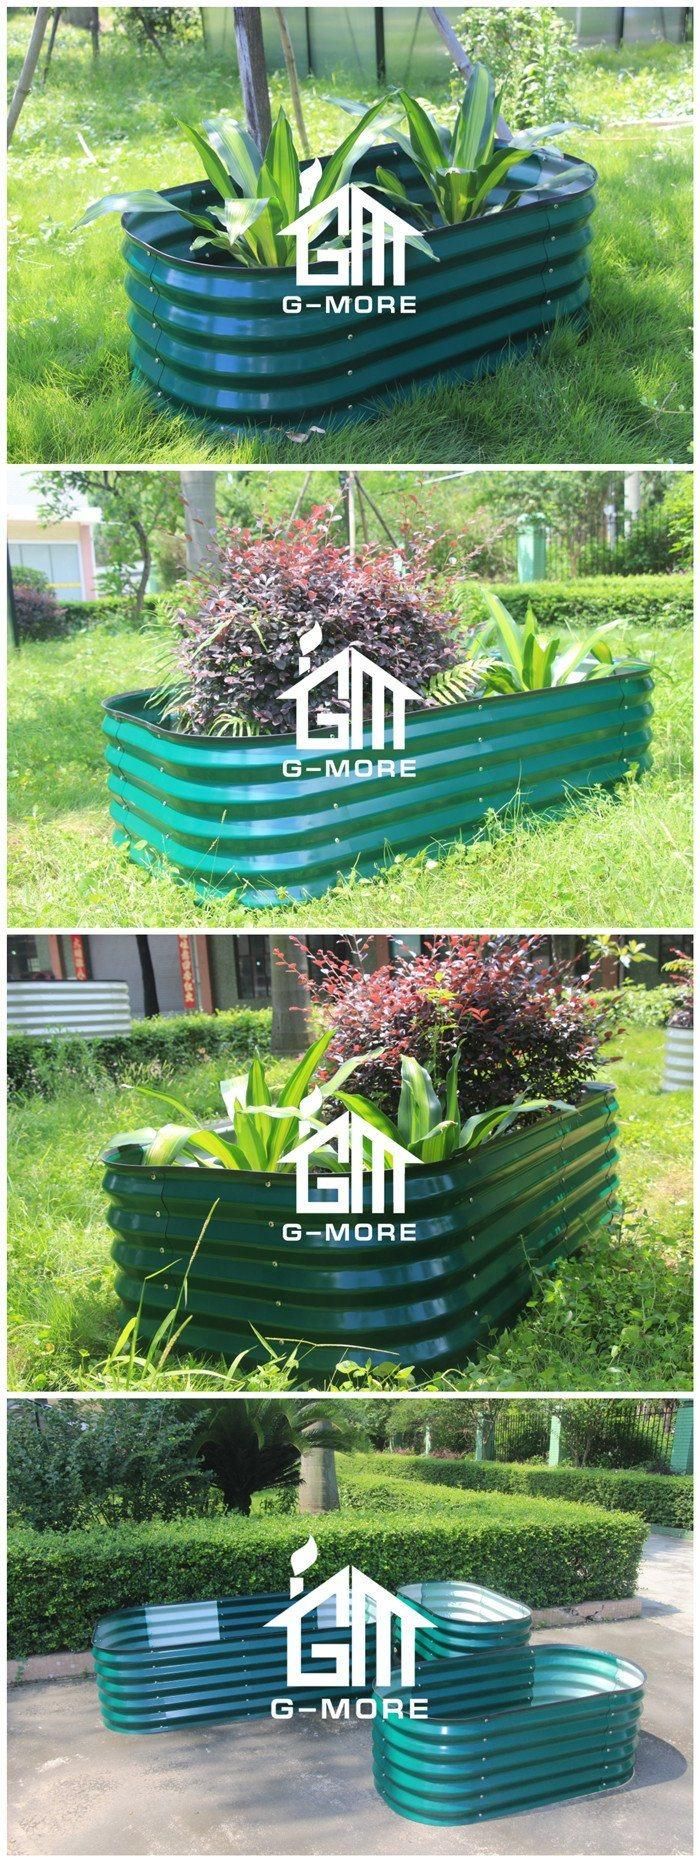 Garden Beds Galvanized Steel Raised Vegetable Garden Beds